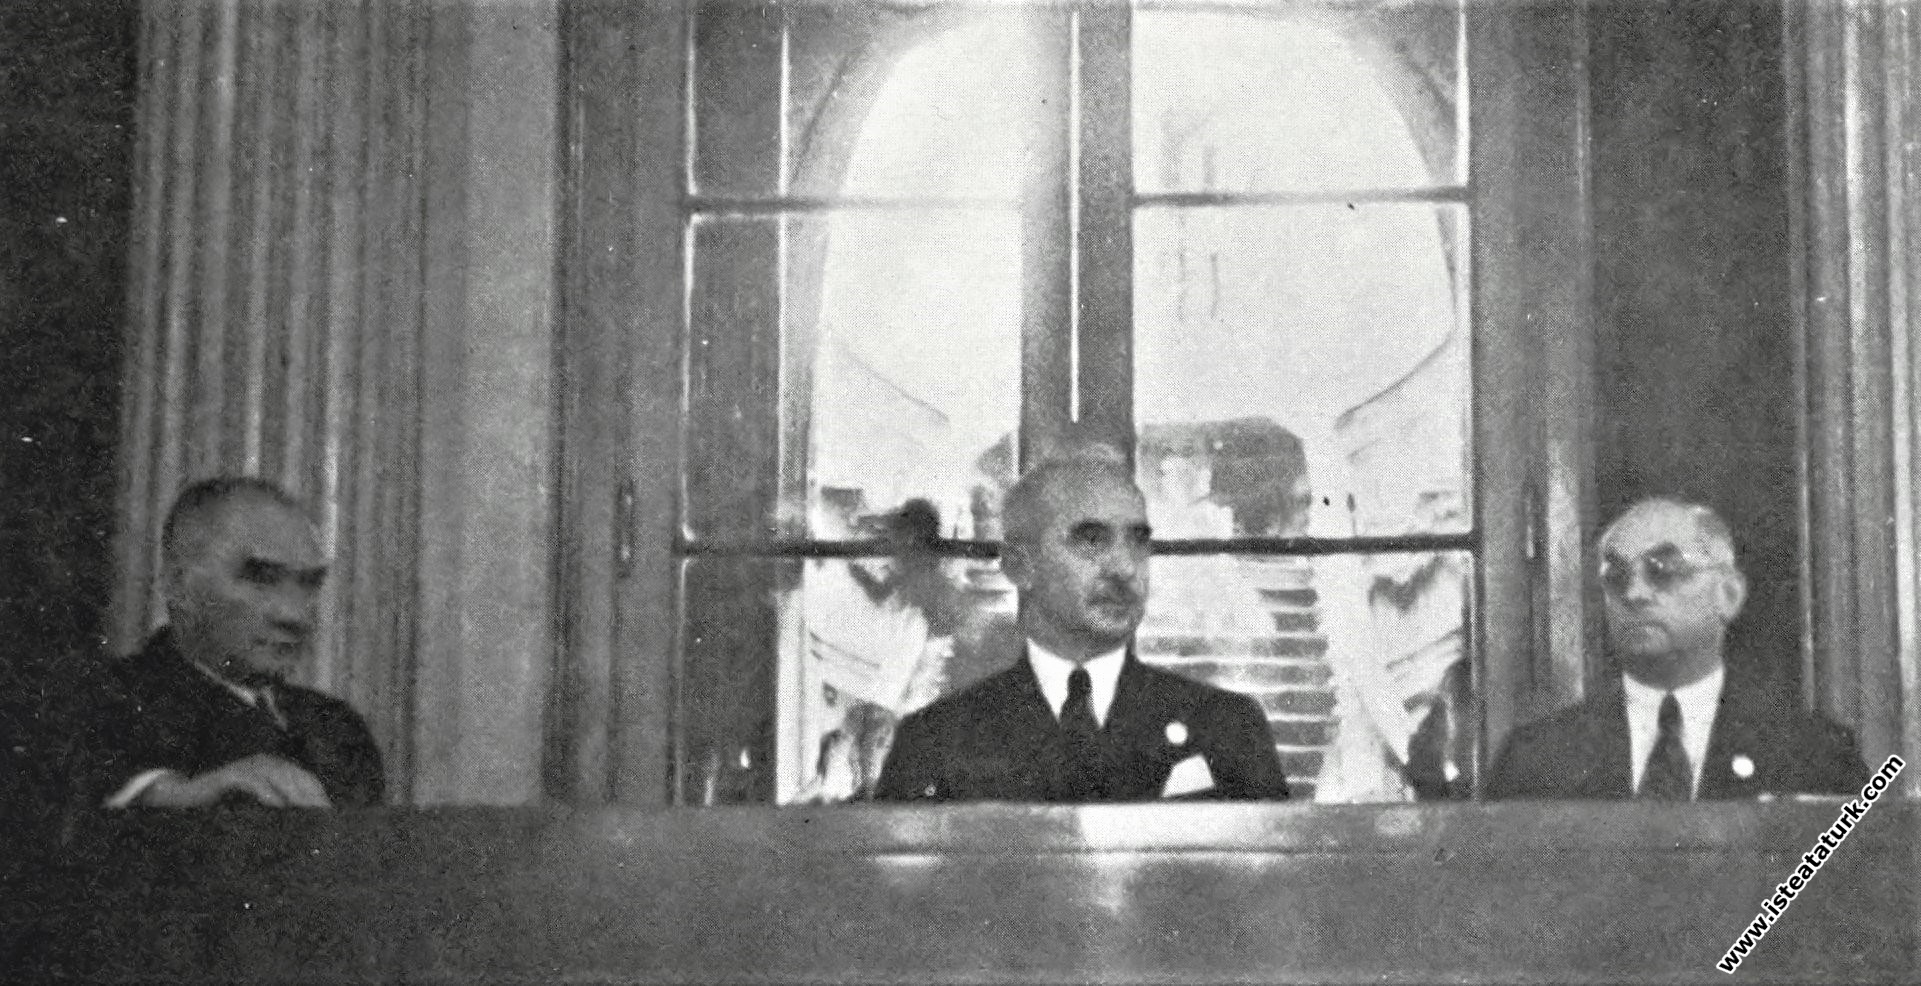 Atatürk II.Tarih Kongresi'nin ikinci günü toplantı...